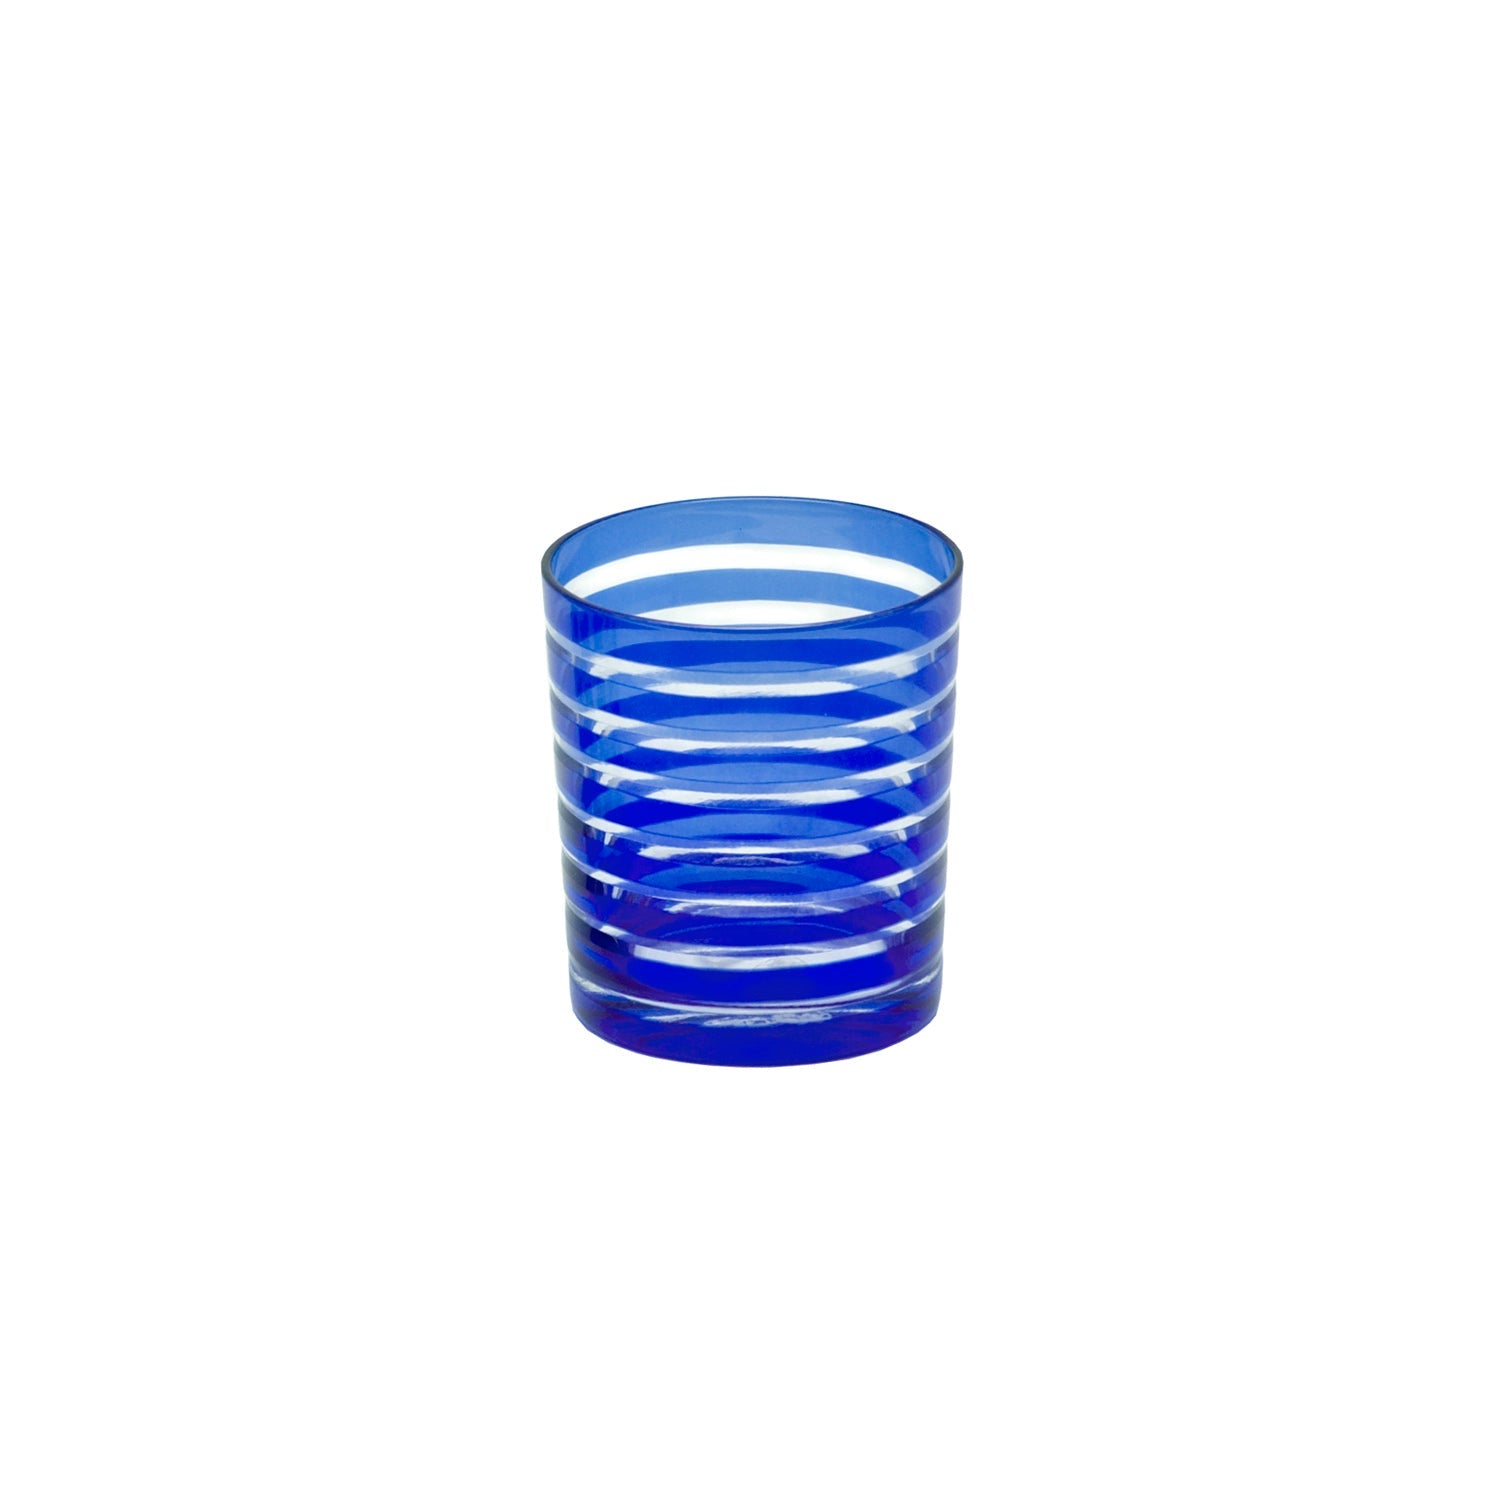 BLUE STRIPED CUPS X 4